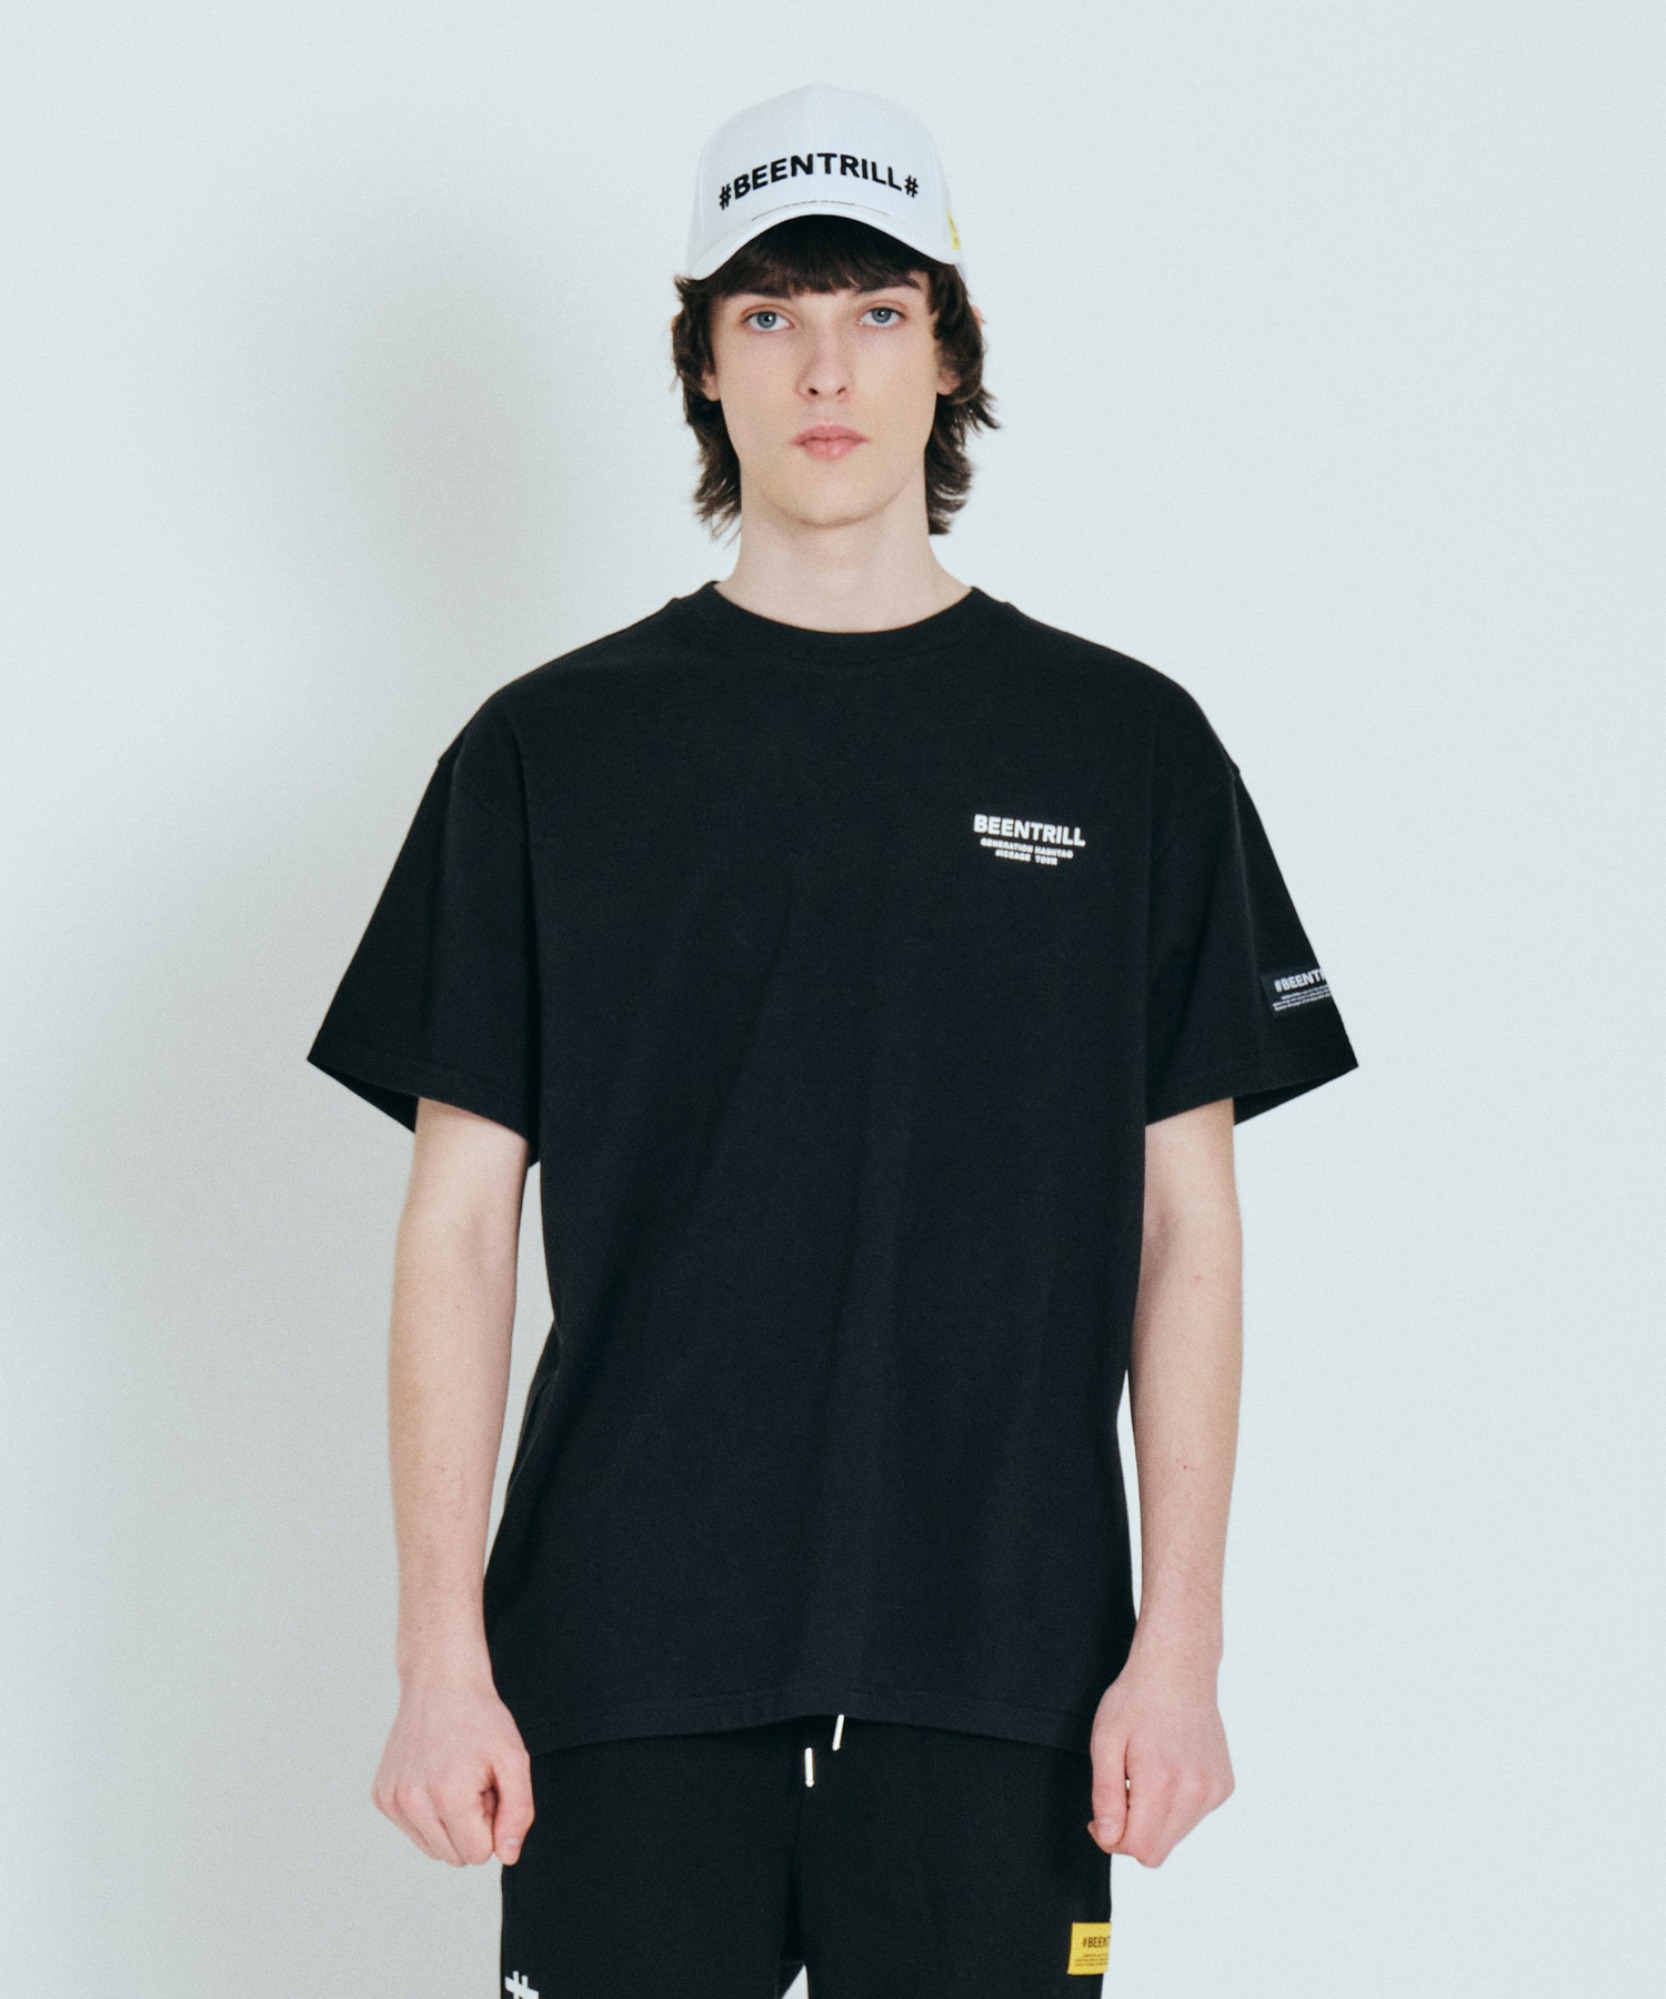 아이스버그 오버핏 반팔 티셔츠(블랙)